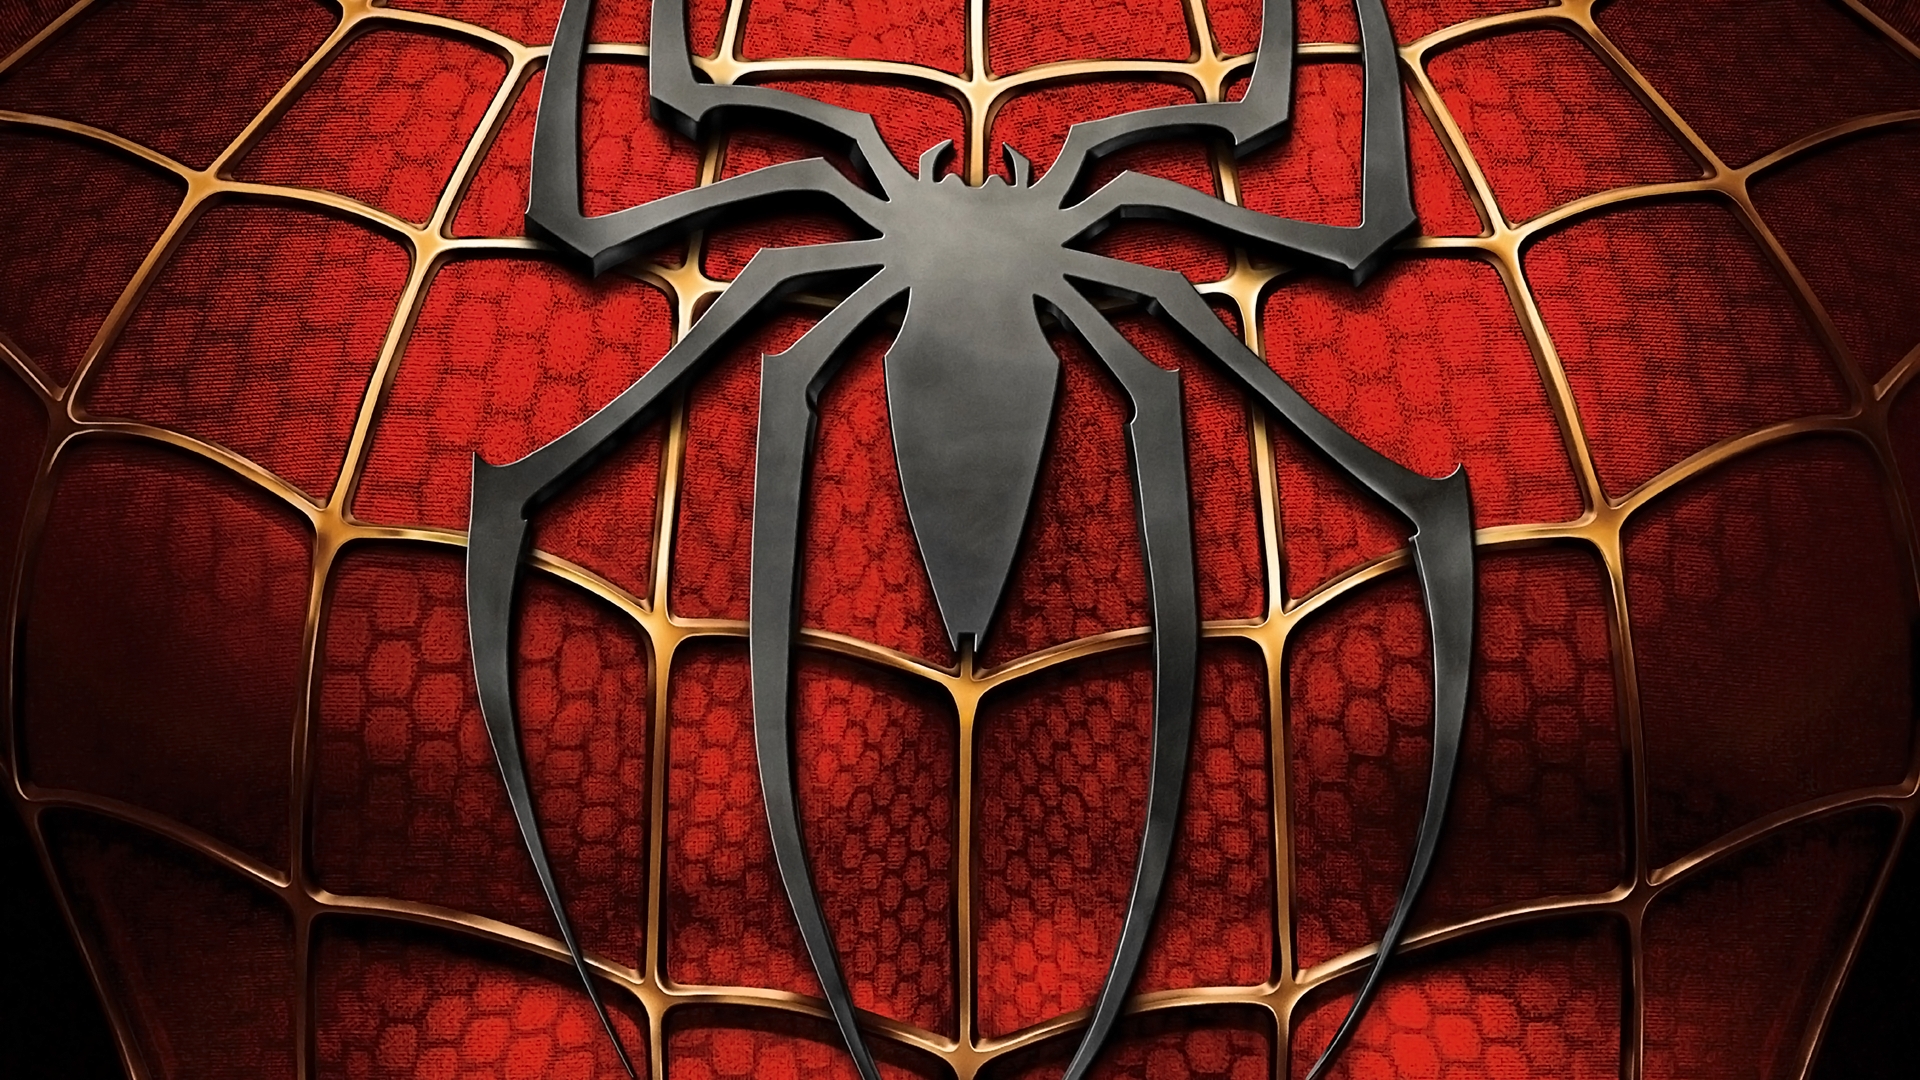 Spiderman Wallpaper Hd